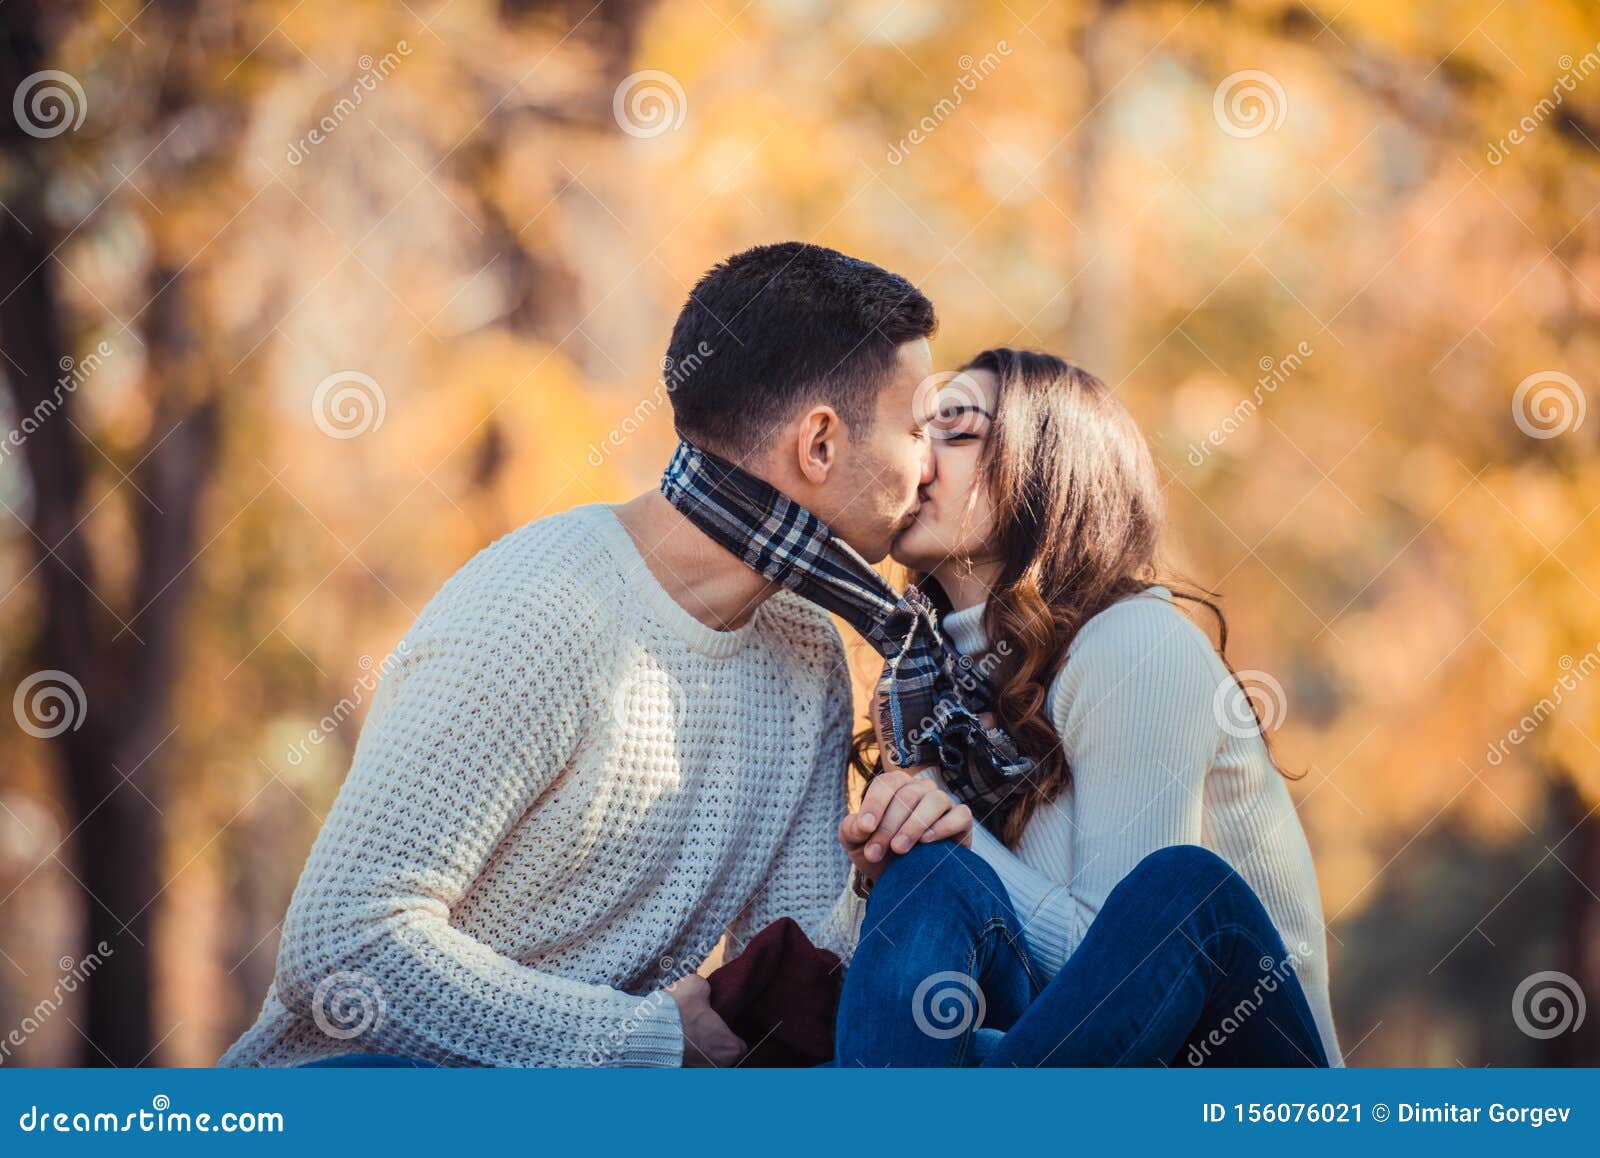 Cute Couple Kissing